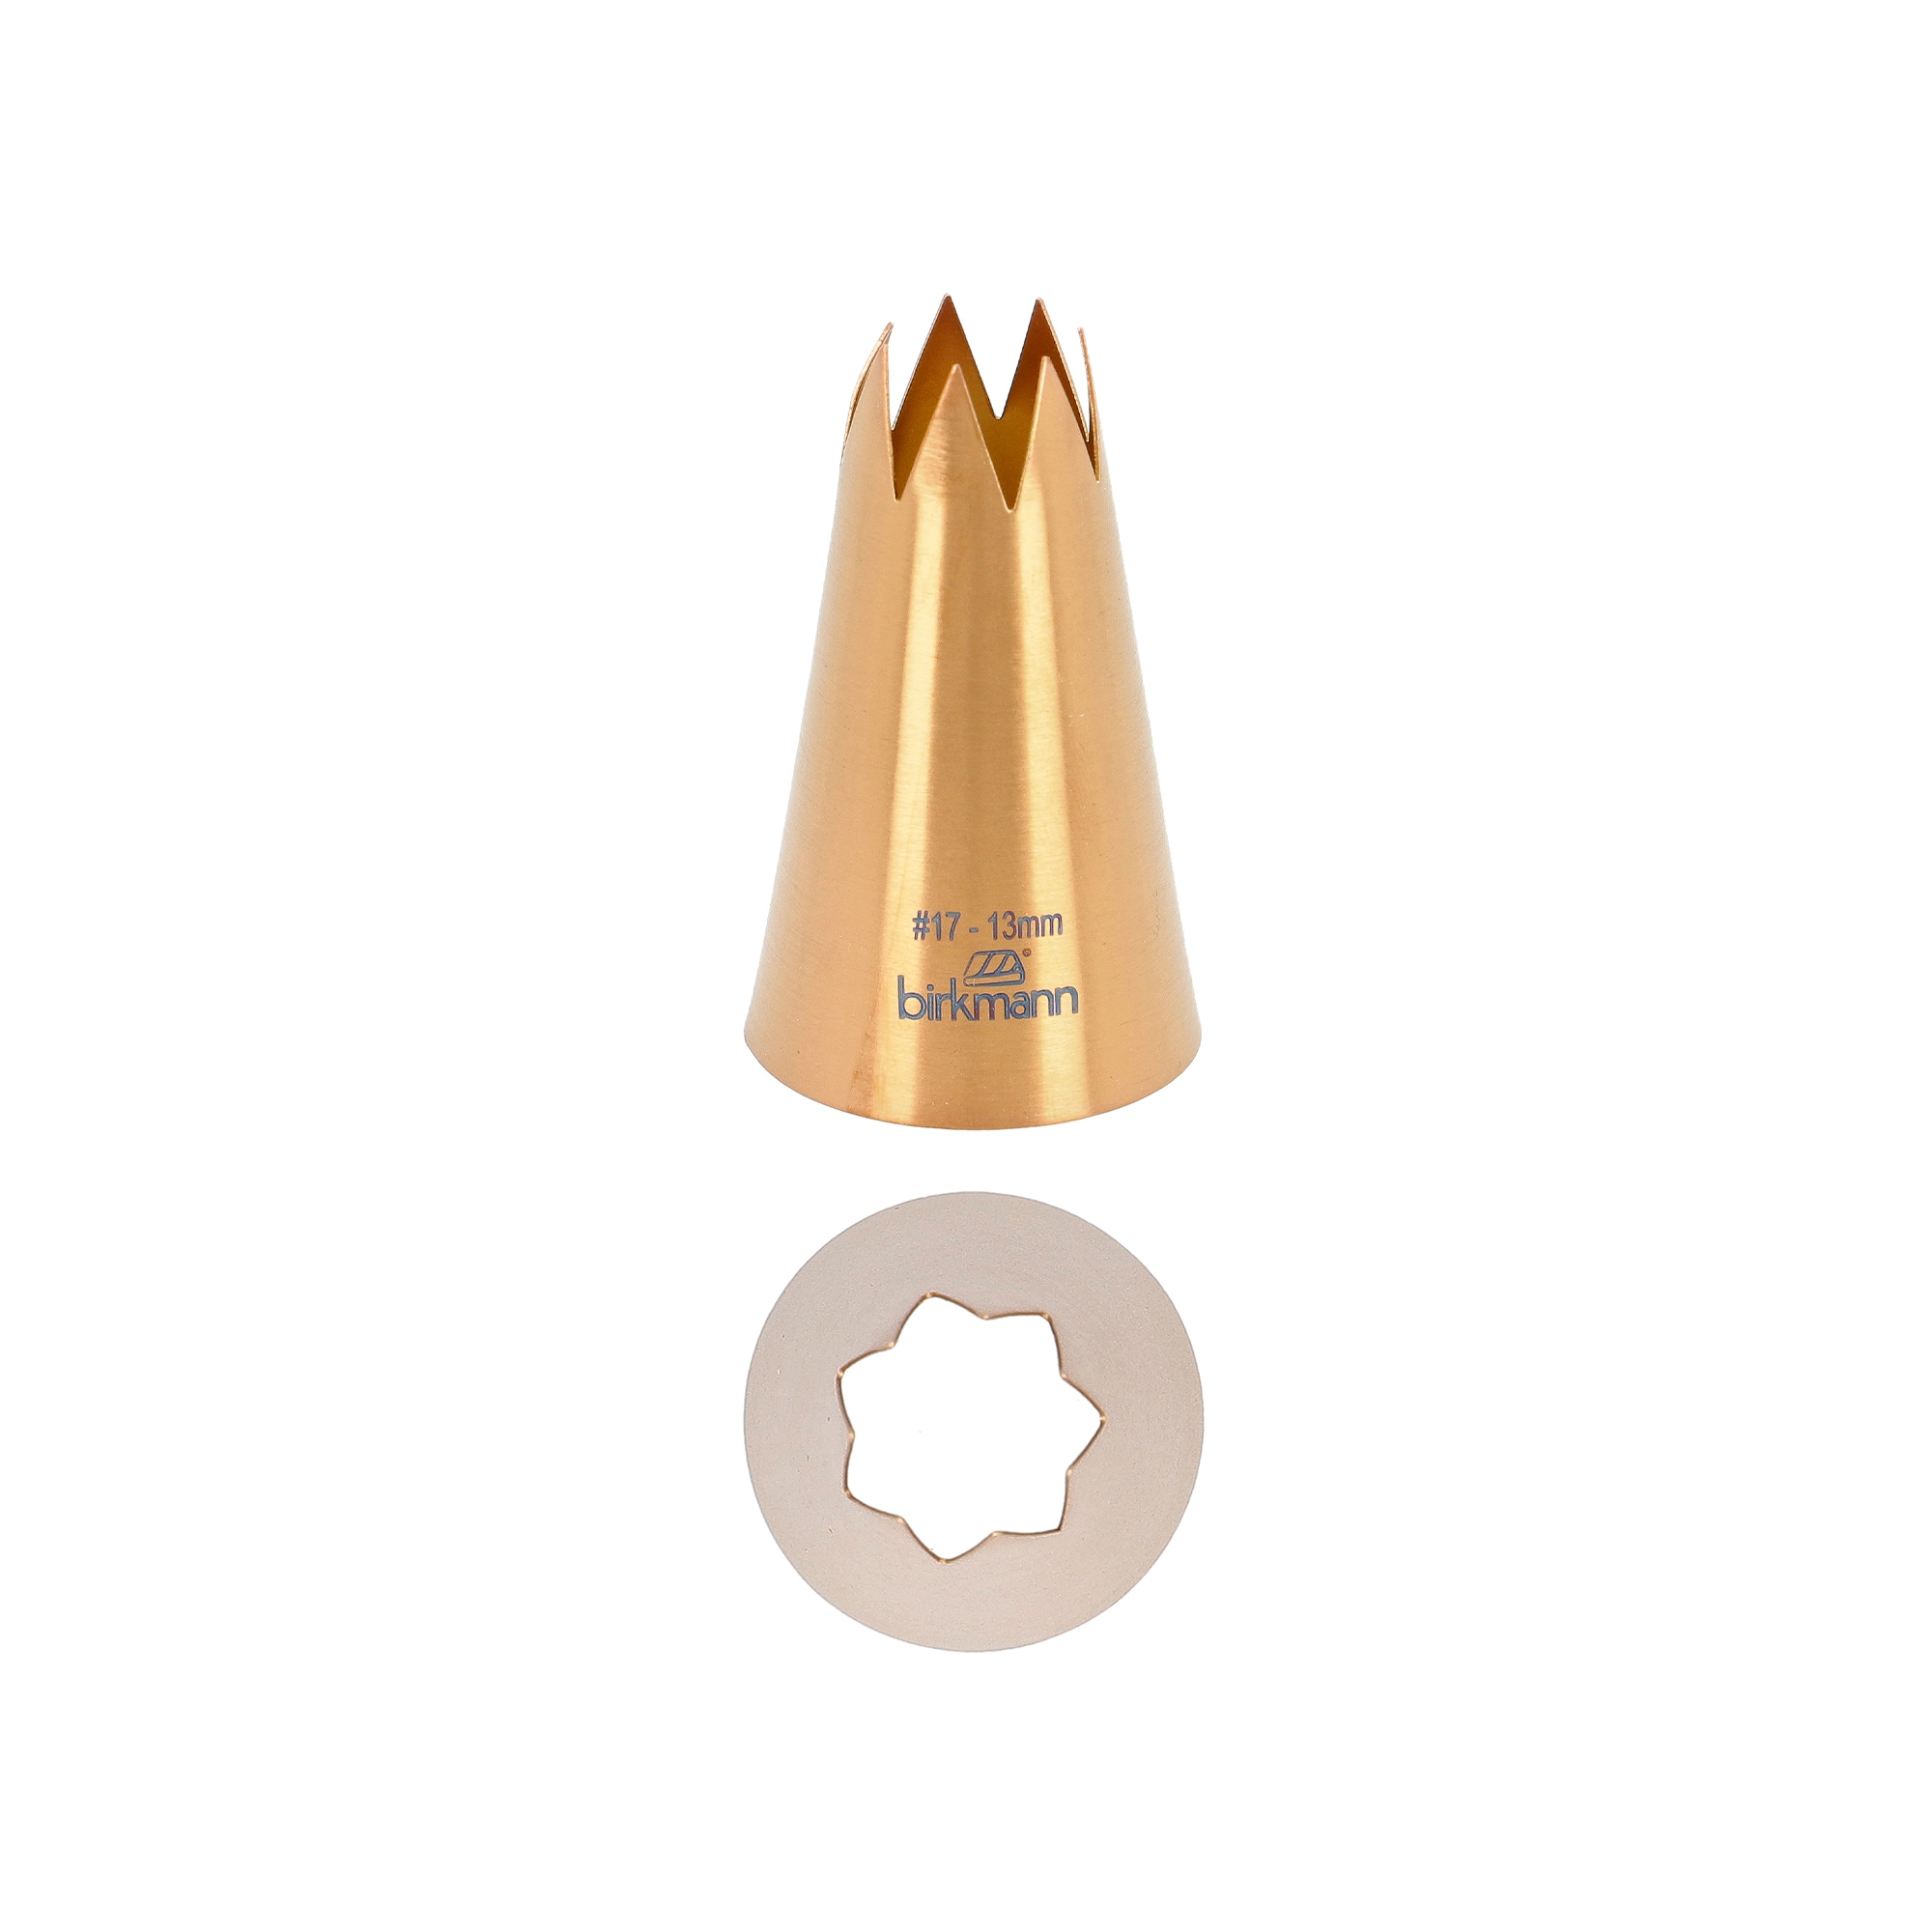 Birkmann - Star nozzle copper colored #17 - 13mm